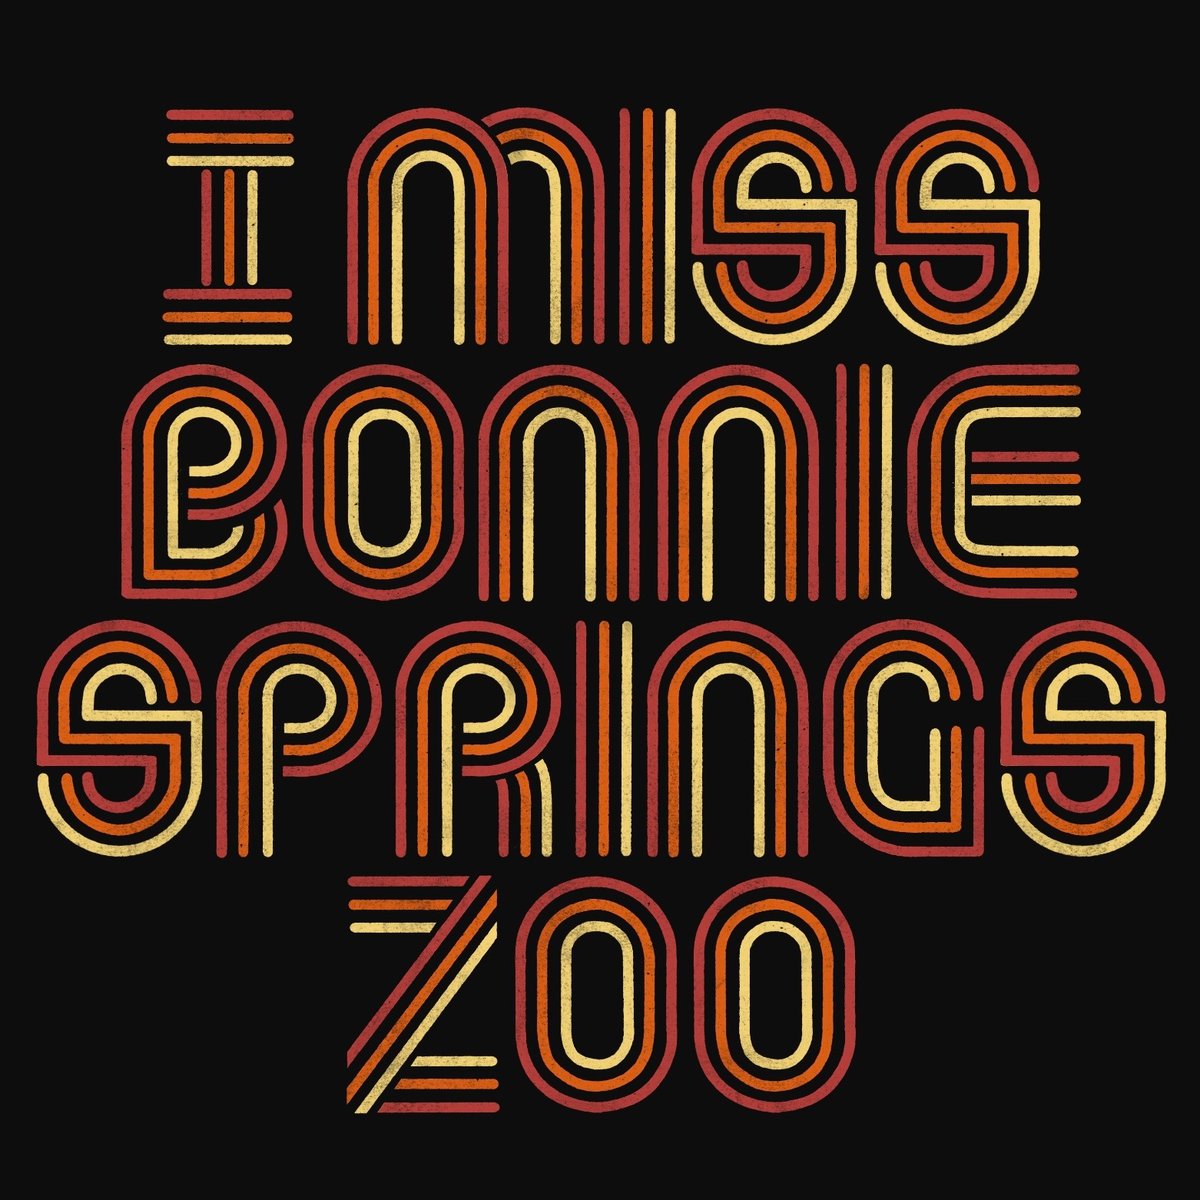 Bonnie Springs Zoo T-Shirt